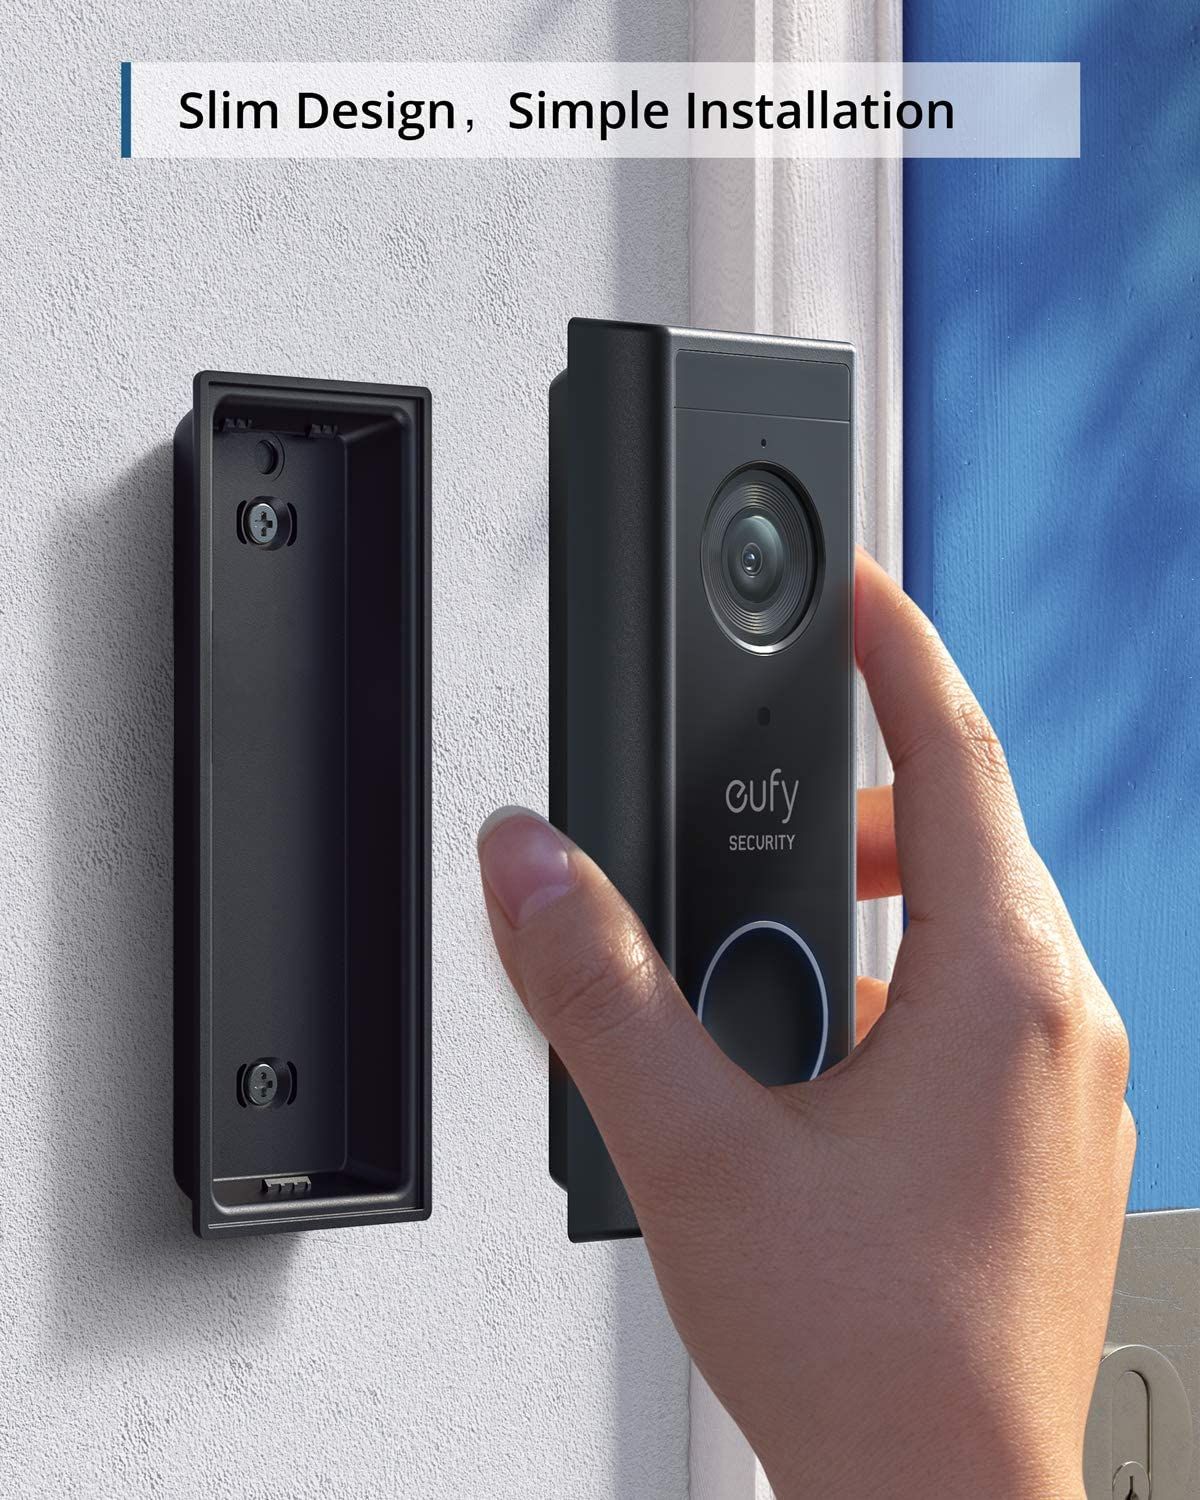 Eufy Video Doorbell's external unit